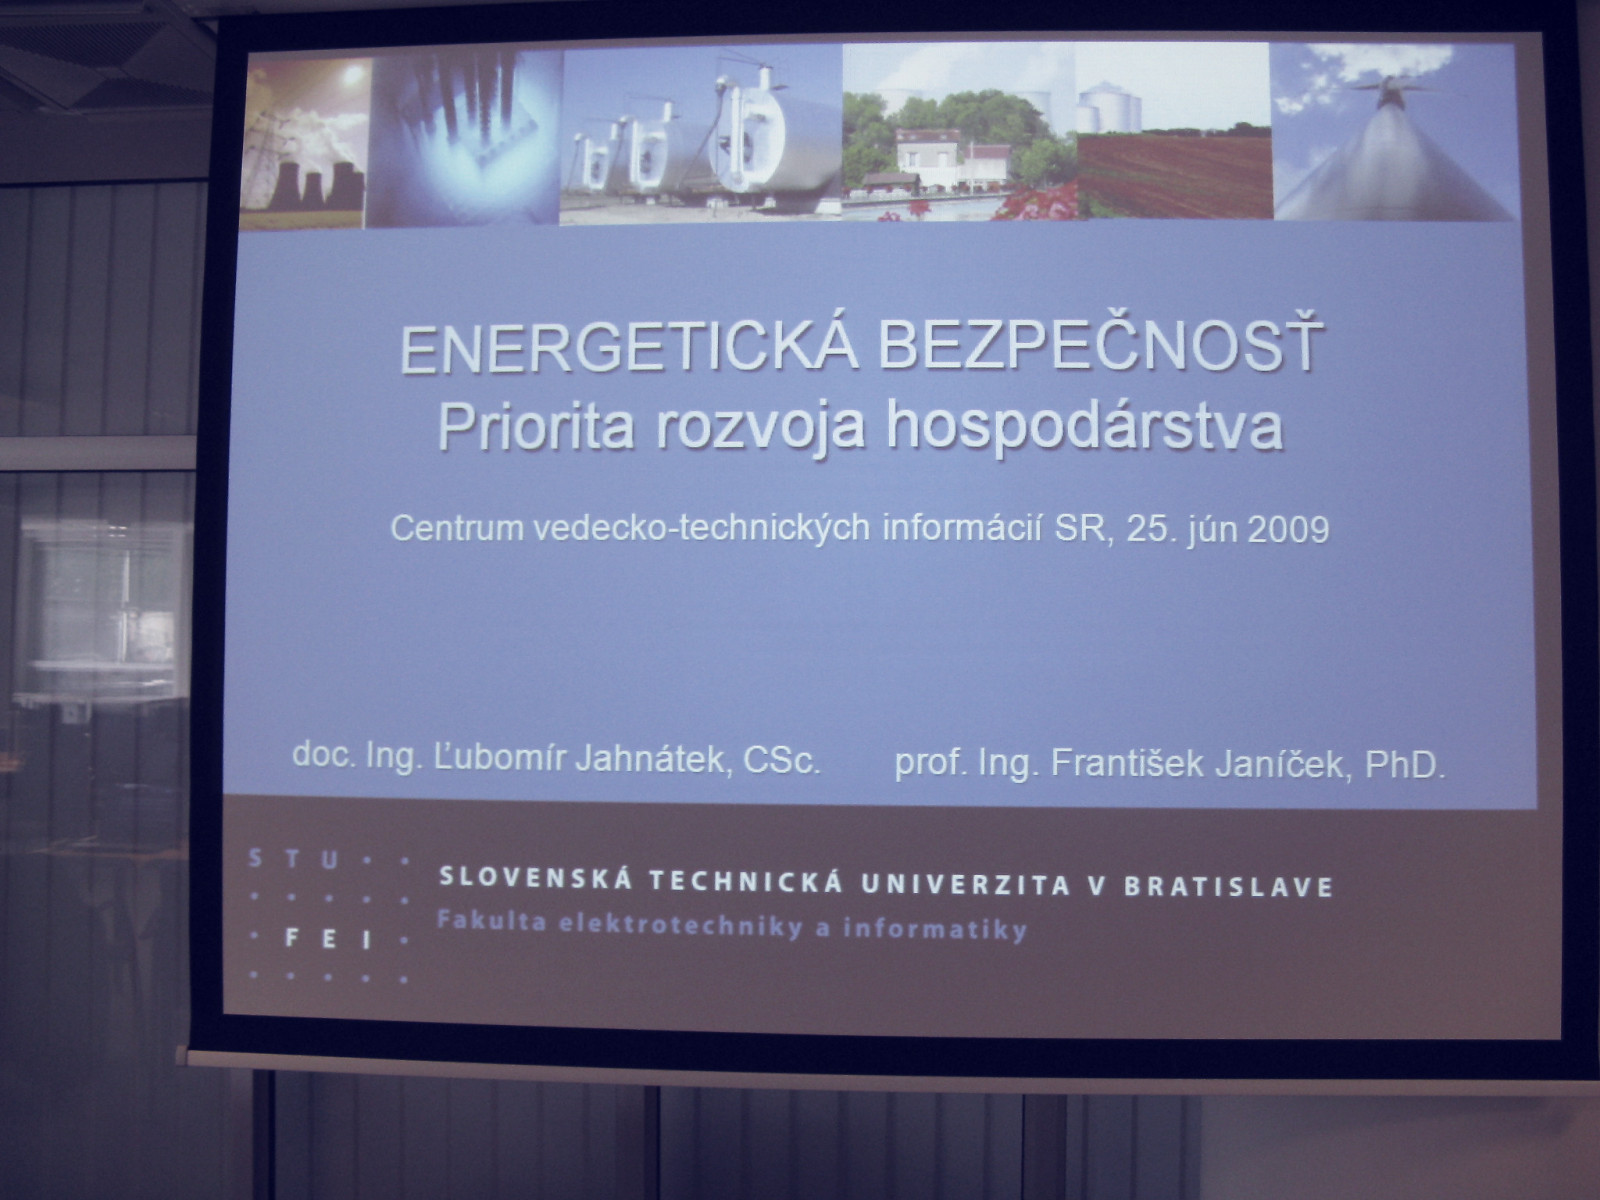 Energetická bezpečnosť – priorita rozvoja hospodárstva SR – prof. Ing. František Janíček, PhD.